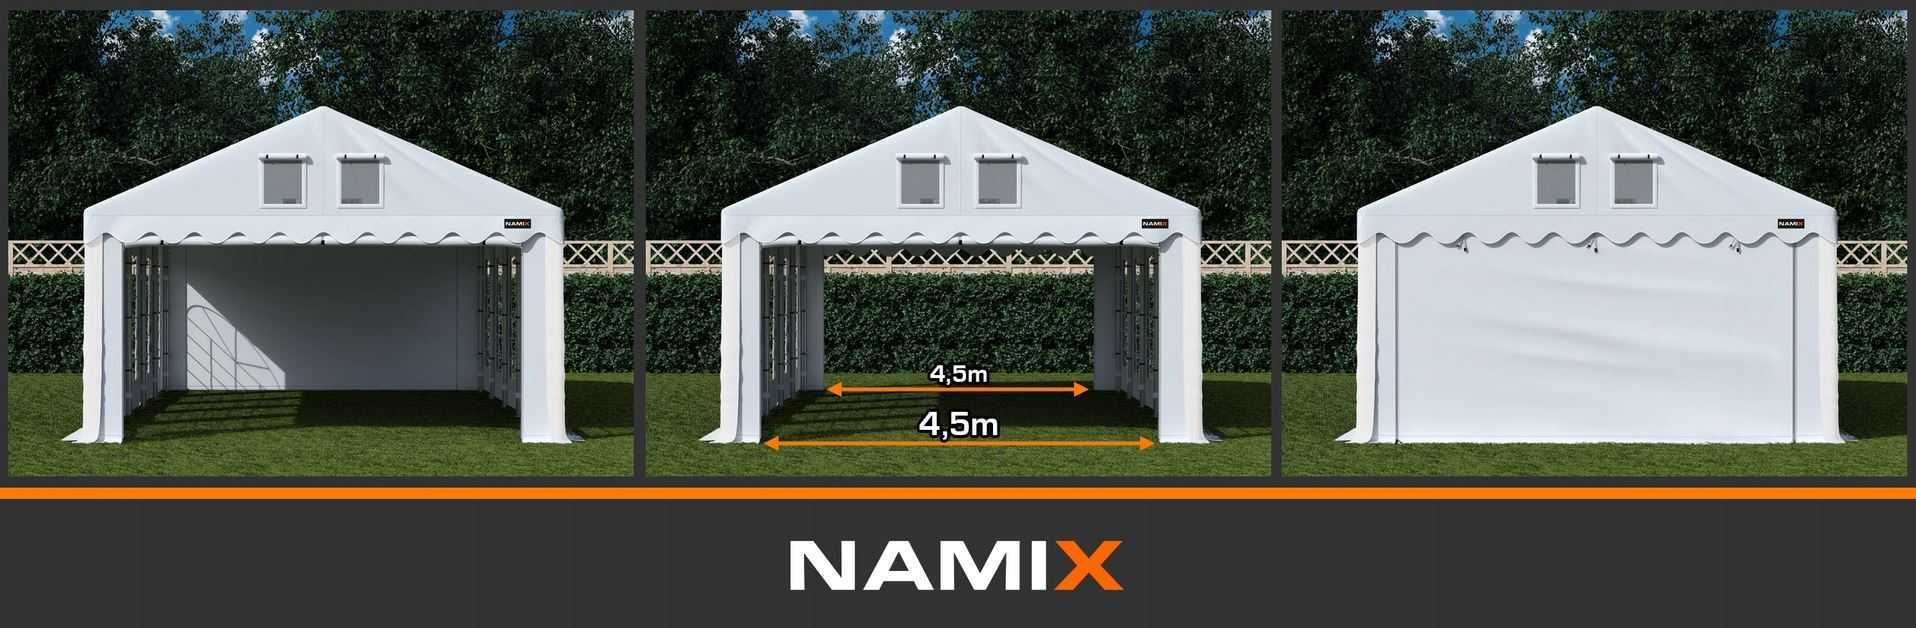 Namiot ROYAL 5x8 ogrodowy imprezowy garaż wzmocniony PVC 560g/m2